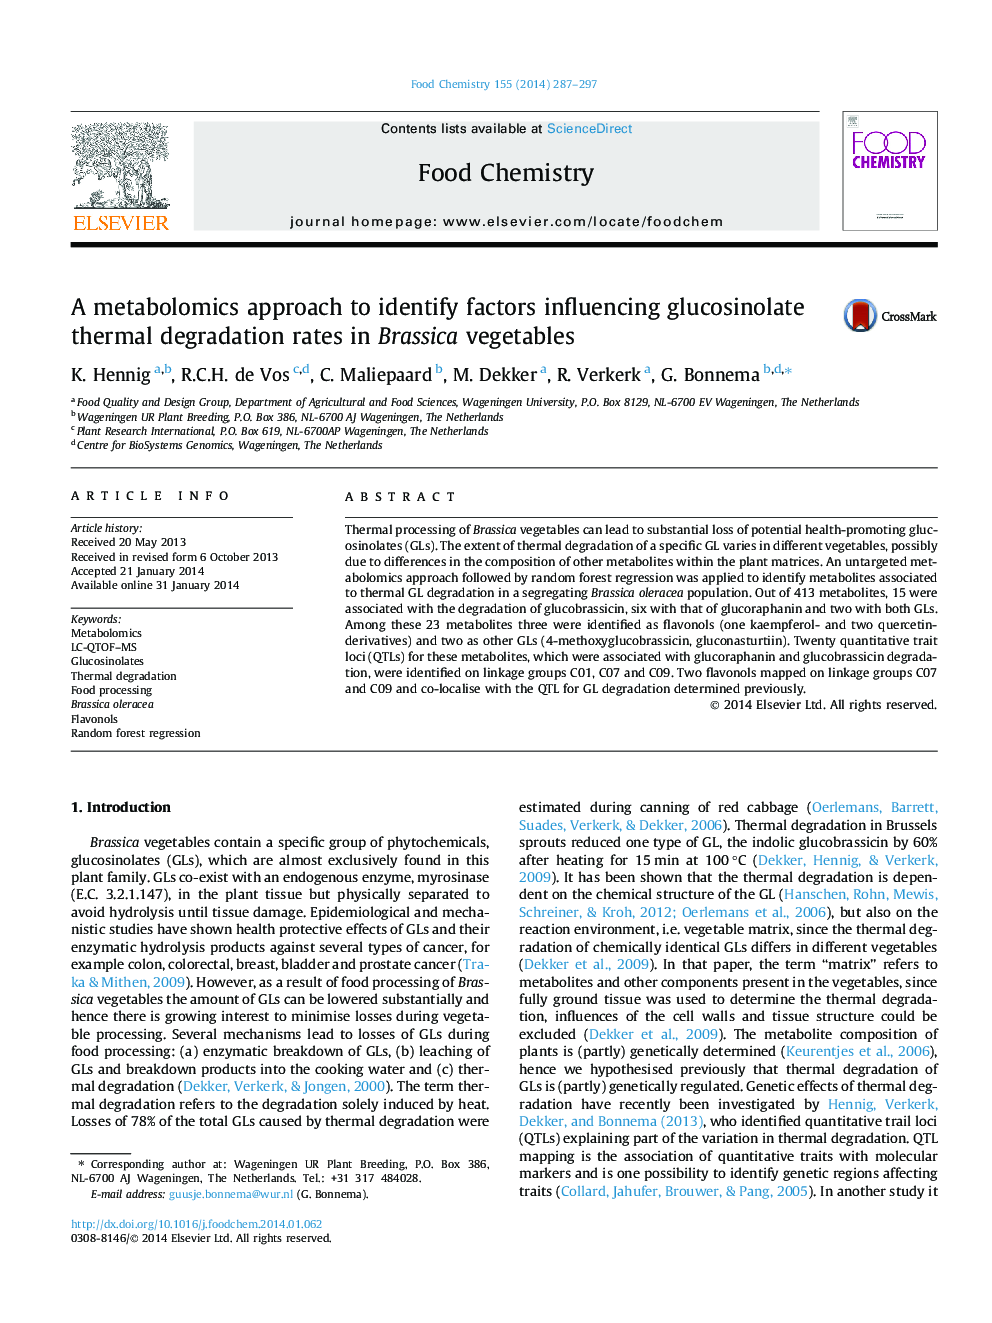 یک روش متابولیکی برای شناسایی عوامل موثر بر میزان تجمع حرارت گلوکوزینولات در سبزیجات براسیکا 